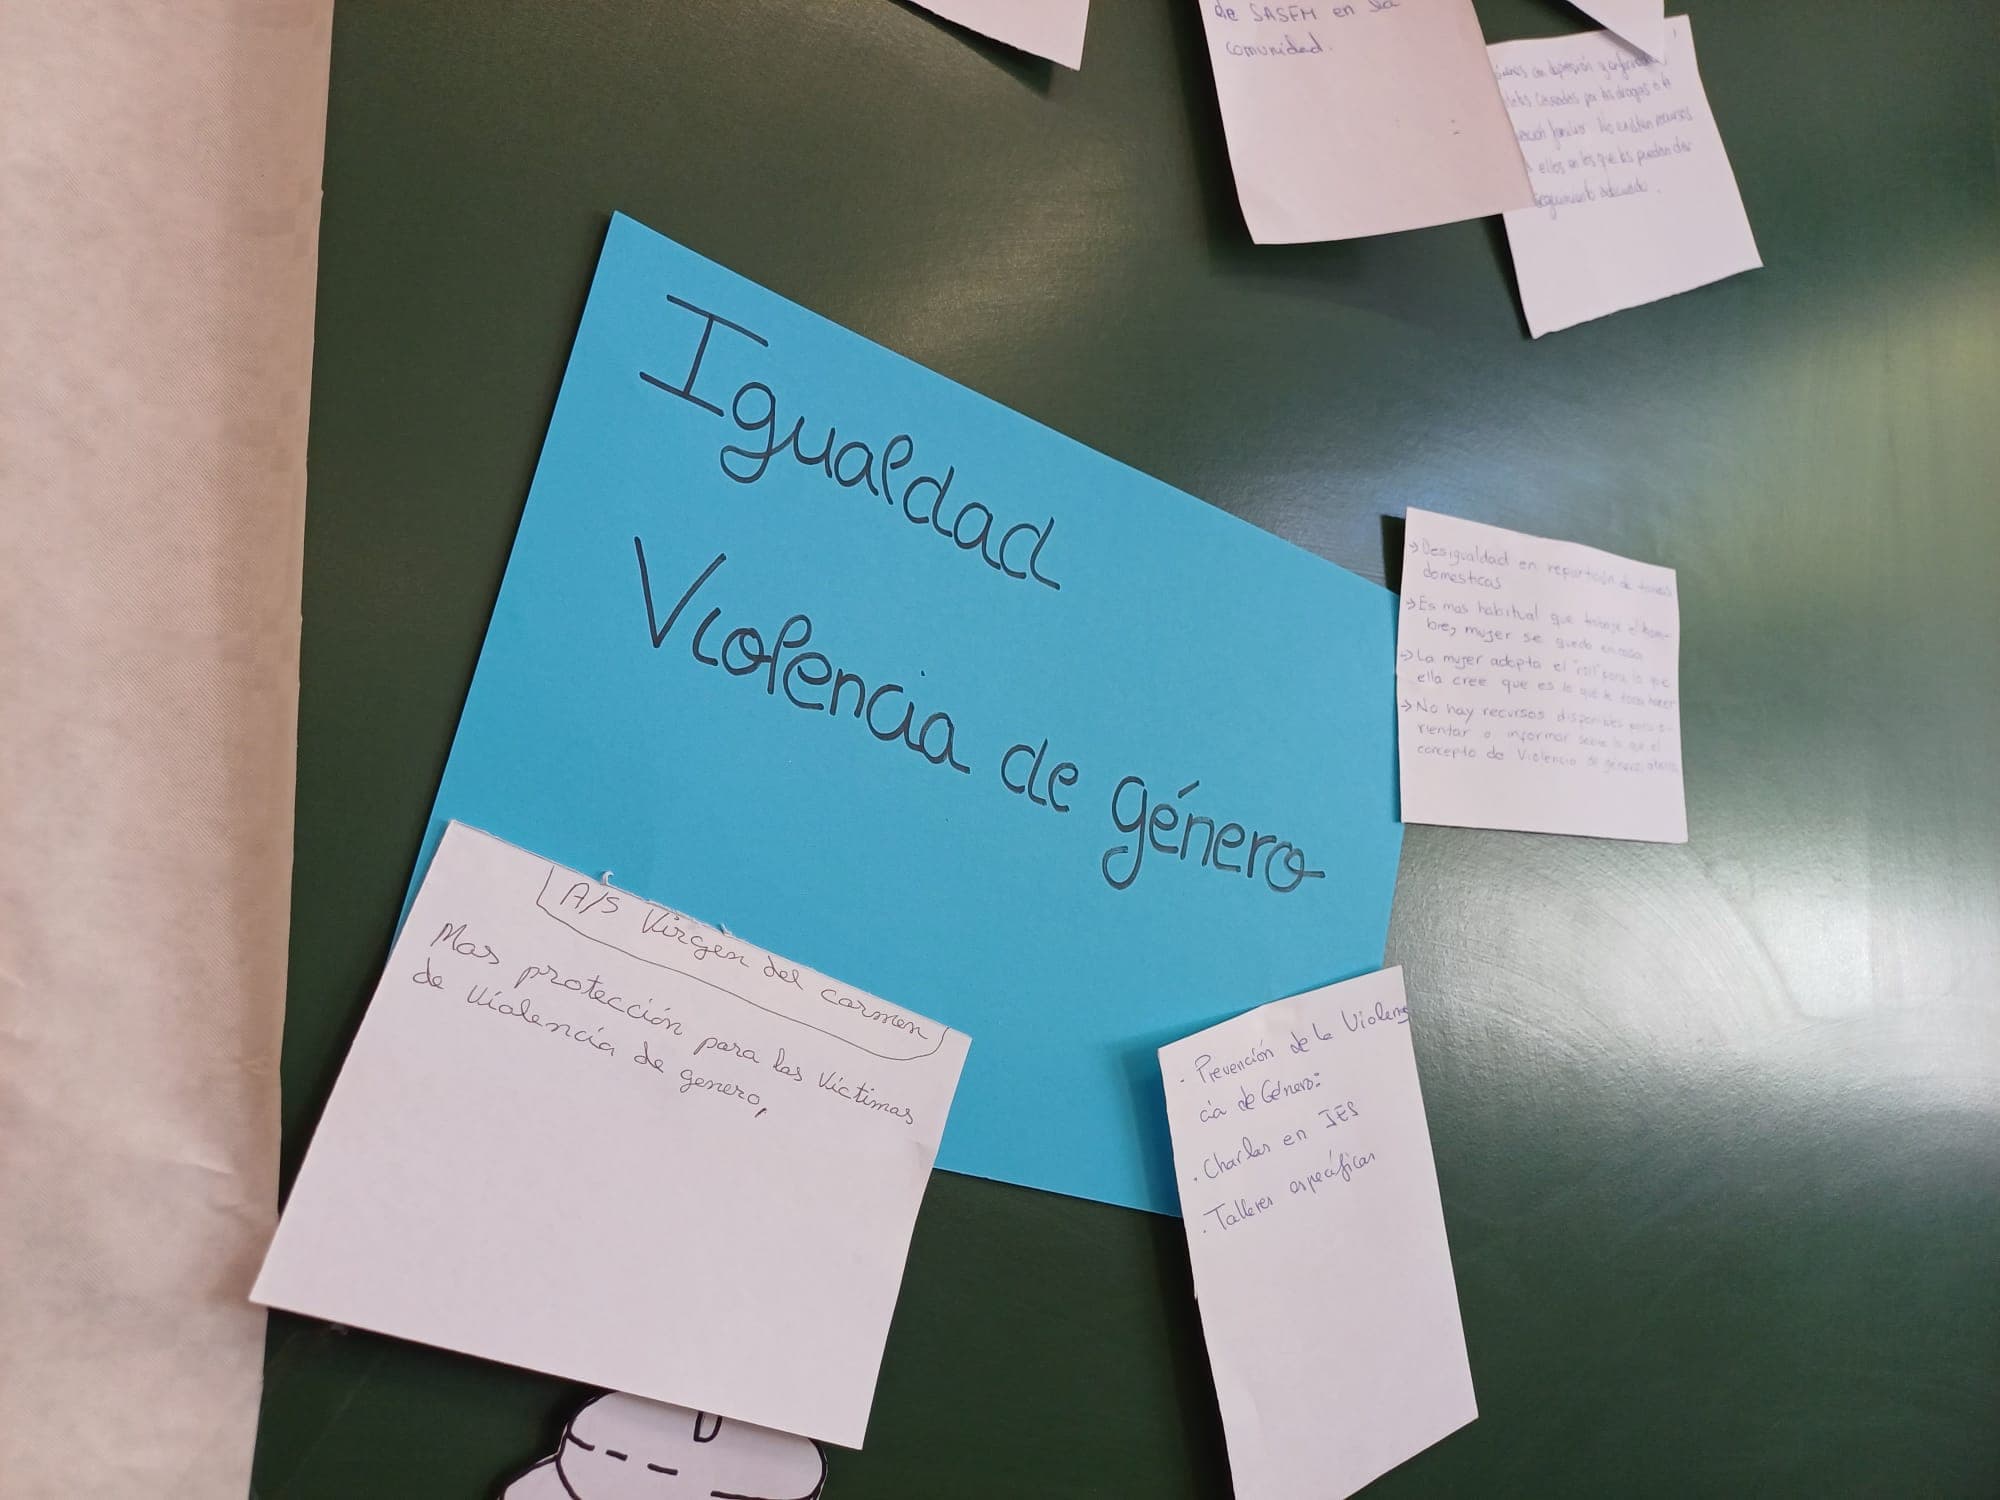   Análisis del barrio Virgen del Carmen a través de la mesa de trabajo comunitario